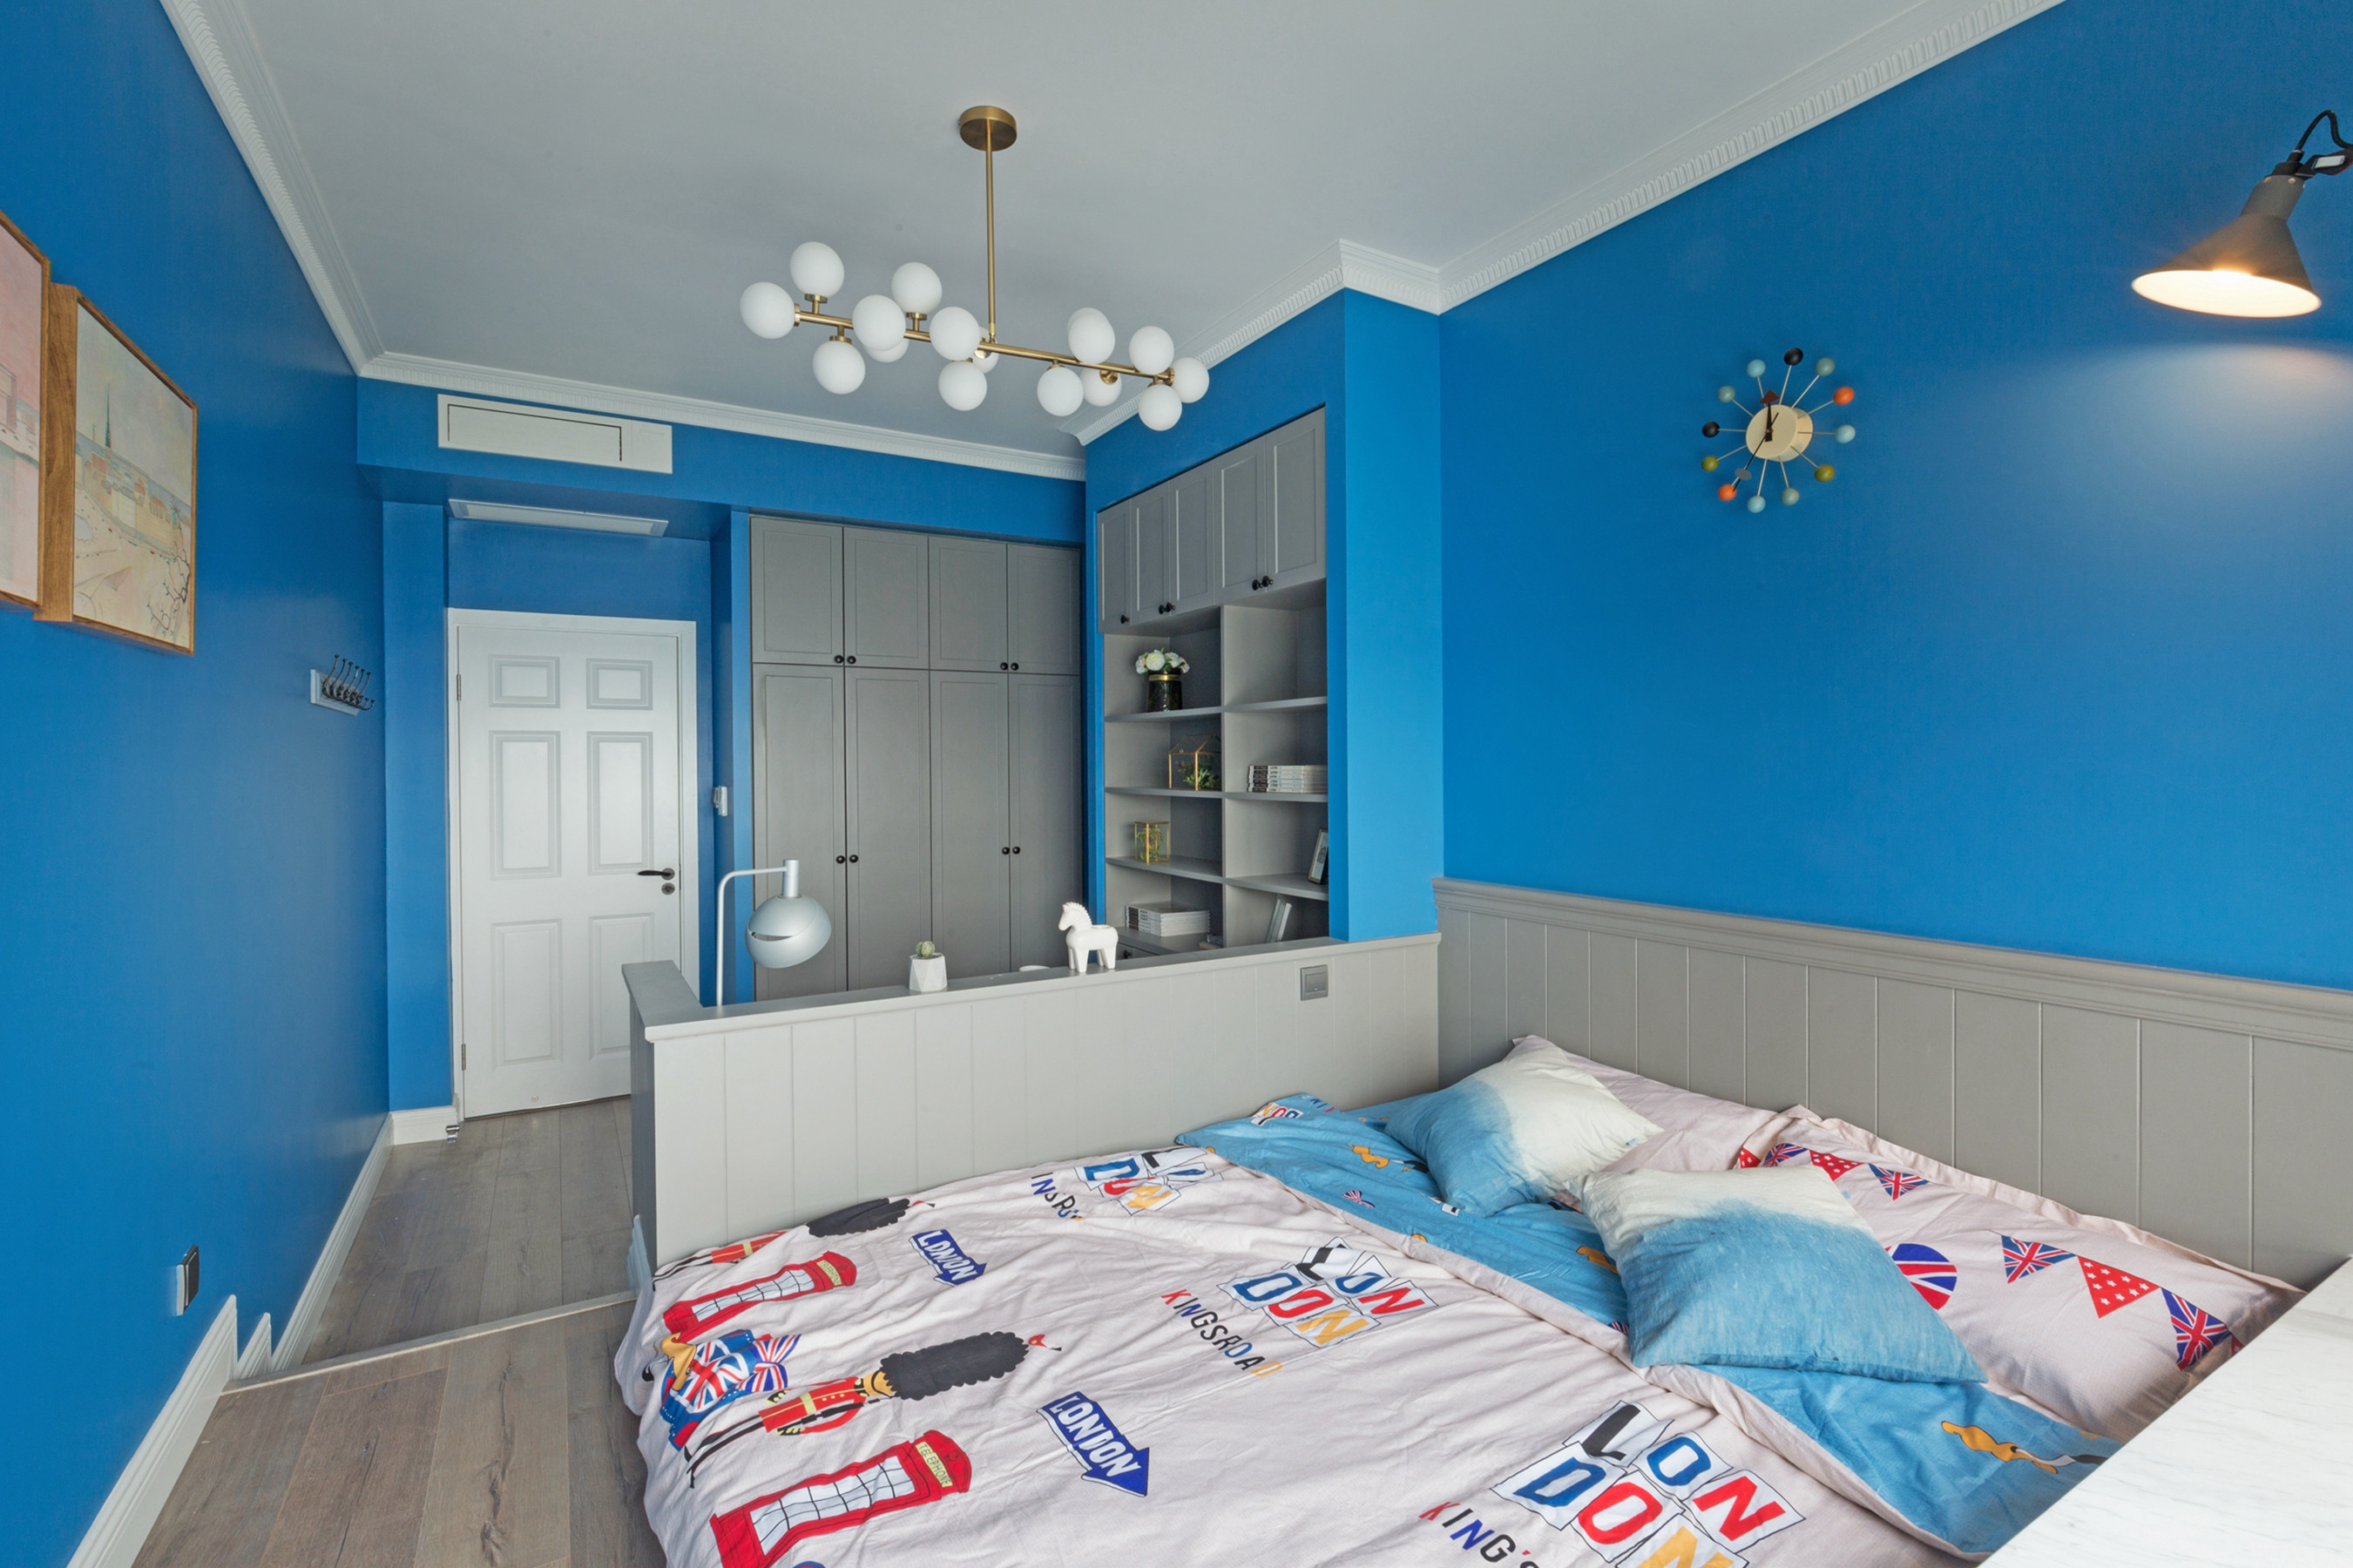 四房装修,15-20万装修,110平米装修,北欧风格,儿童房,卧室背景墙,蓝色